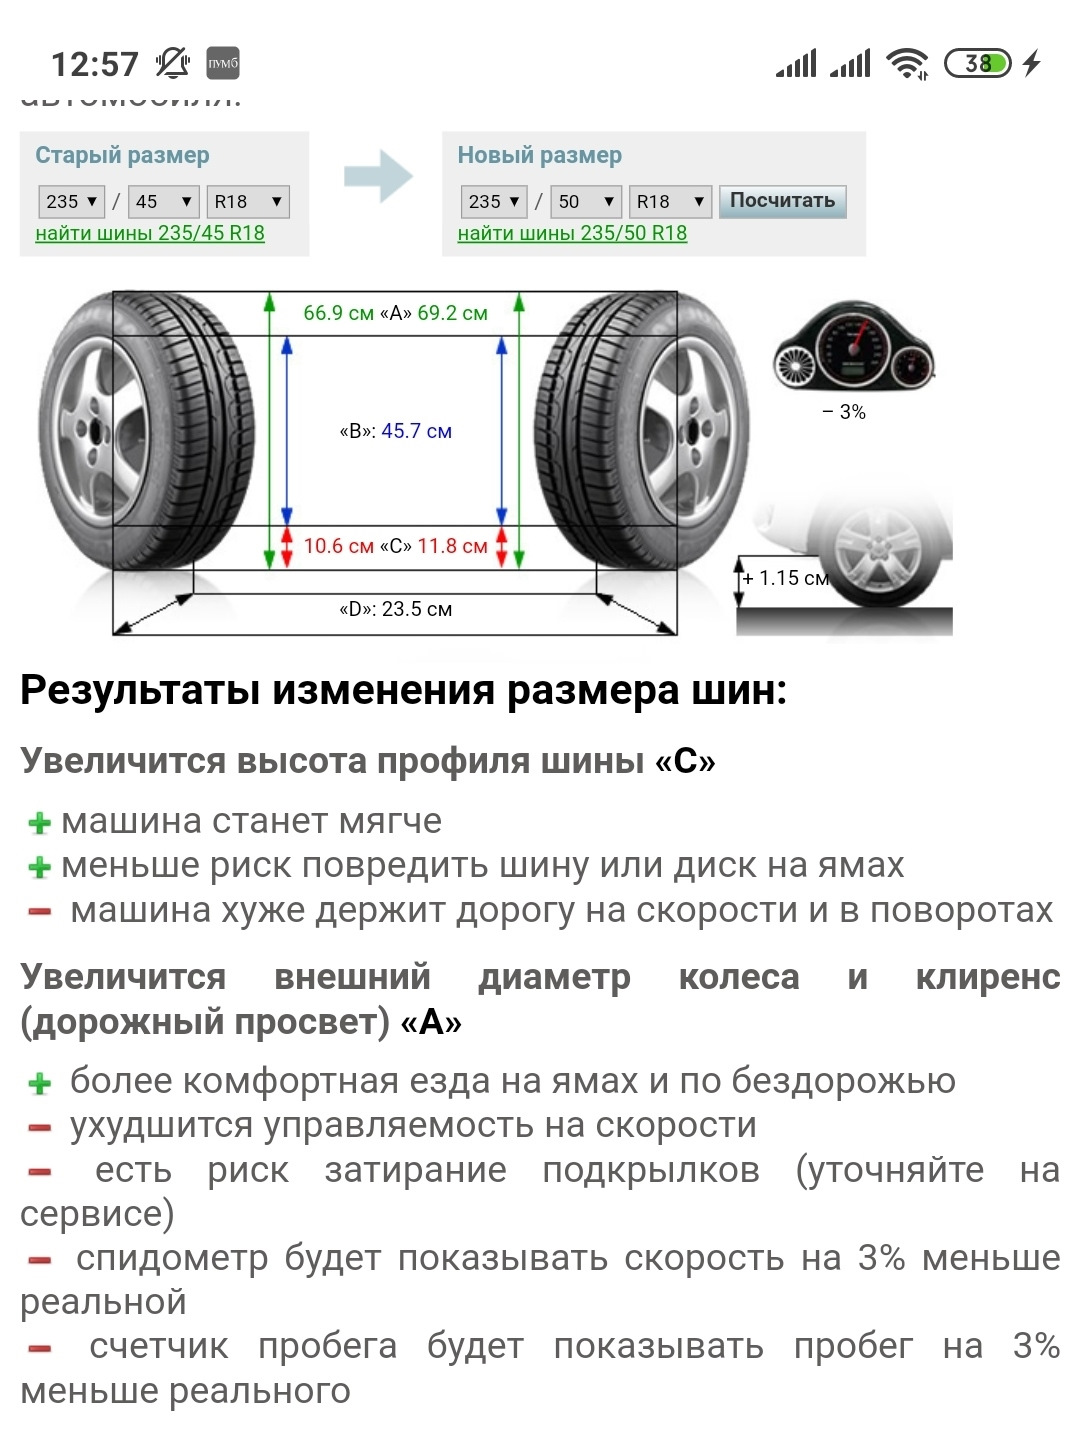 Размеры резины на машину. Как узнать какого диаметра шины автомобильные. Ширина профиля шины Камри. Как определить размер колес авто. Как узнать ширину профиля шины.